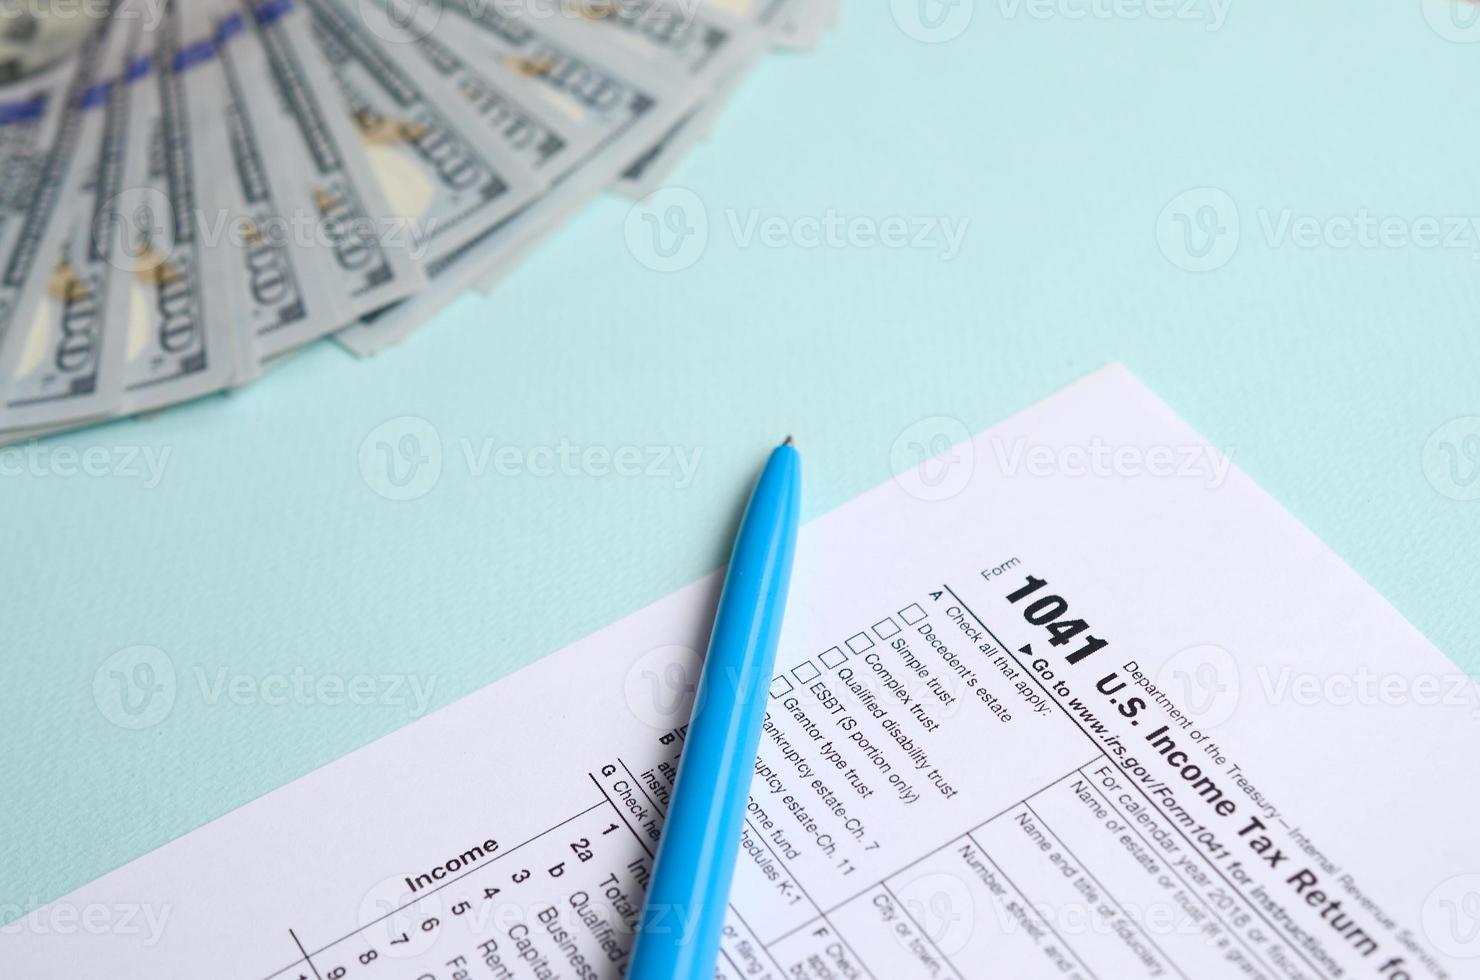 1041 formulário de imposto fica perto de notas de cem dólares e caneta azul sobre um fundo azul claro. nos retorno de imposto de renda para propriedades e fundos foto